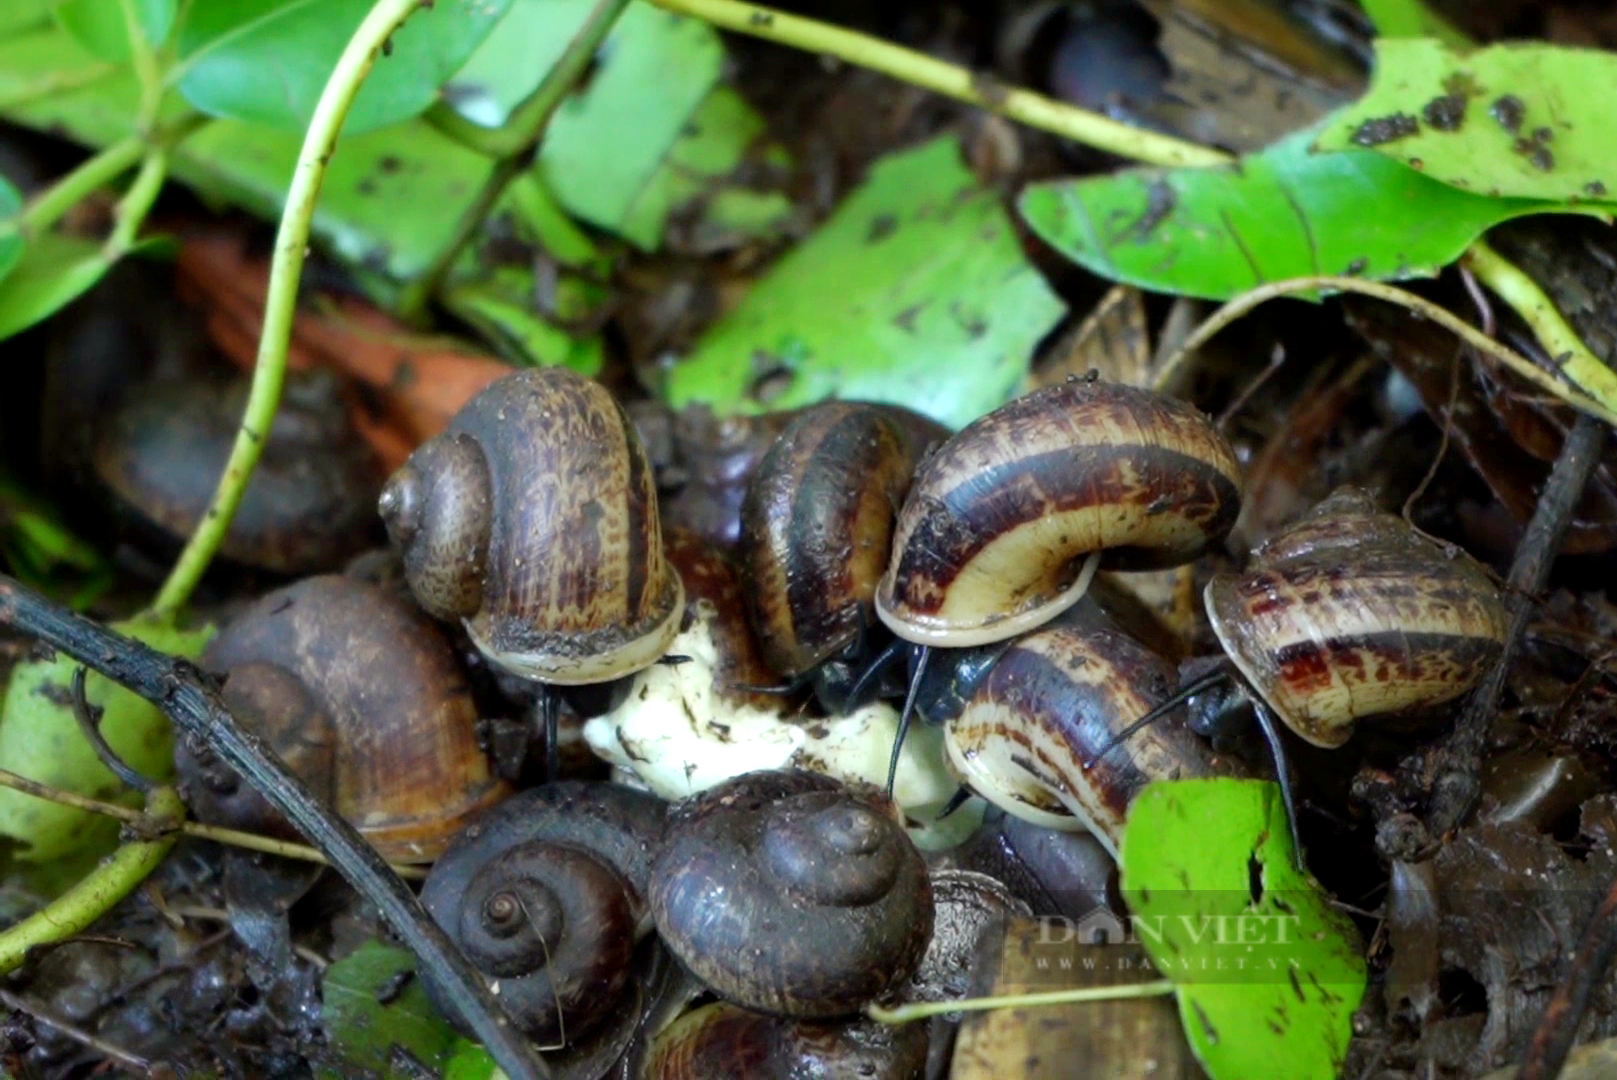 Nuôi loài ốc đặc sản thơm mùi thuốc Nam, bán giá 400.000 đồng/kg, anh nông dân Tây Ninh hốt bạc - Ảnh 3.